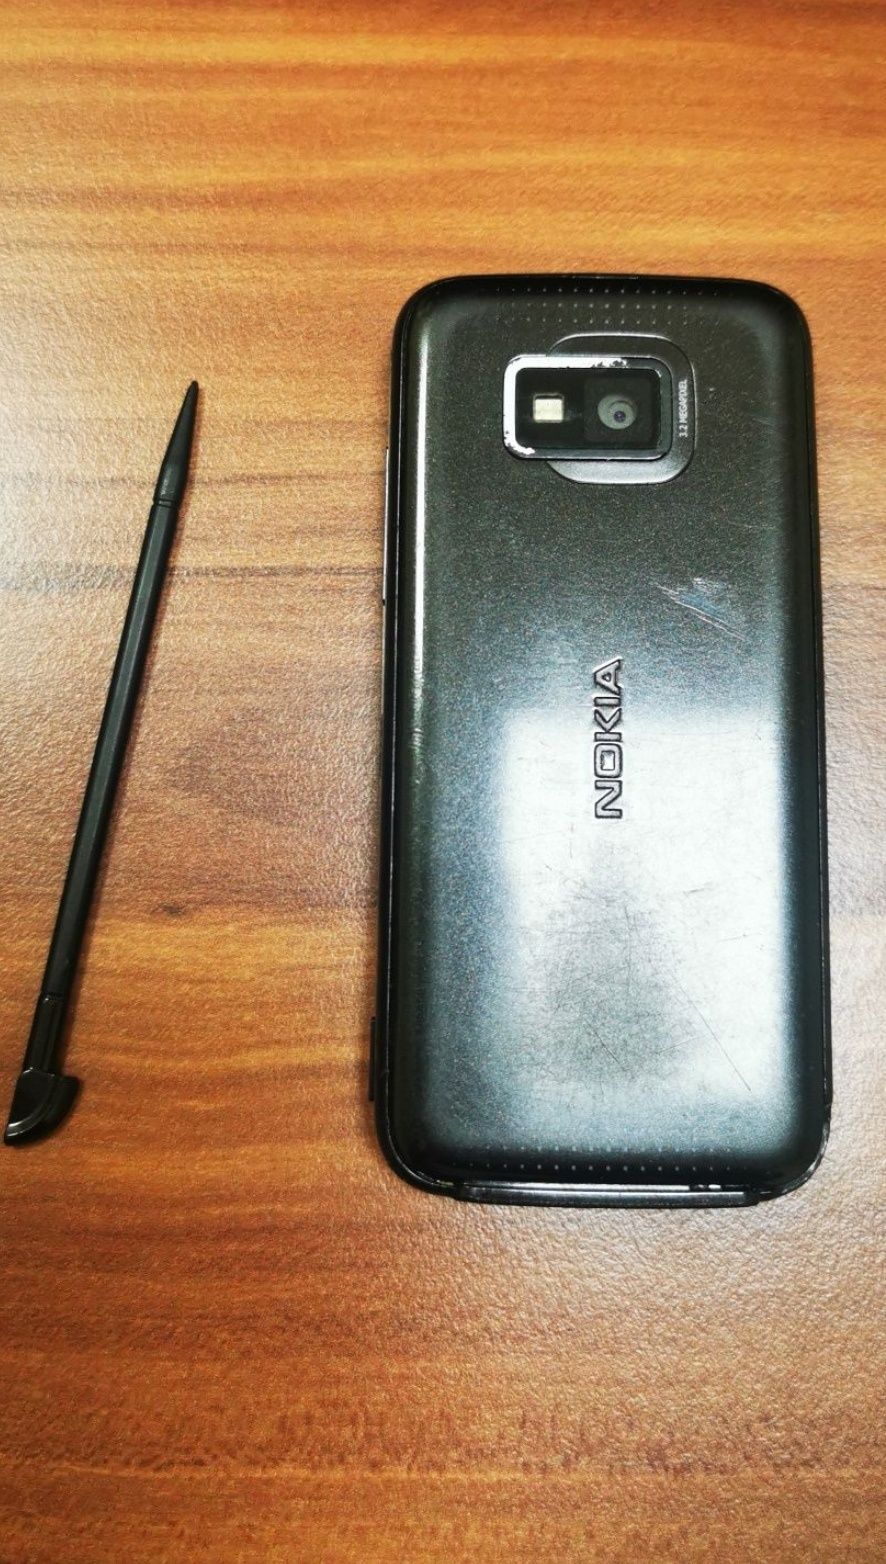 Nokia 5530, и Sony Ericsson